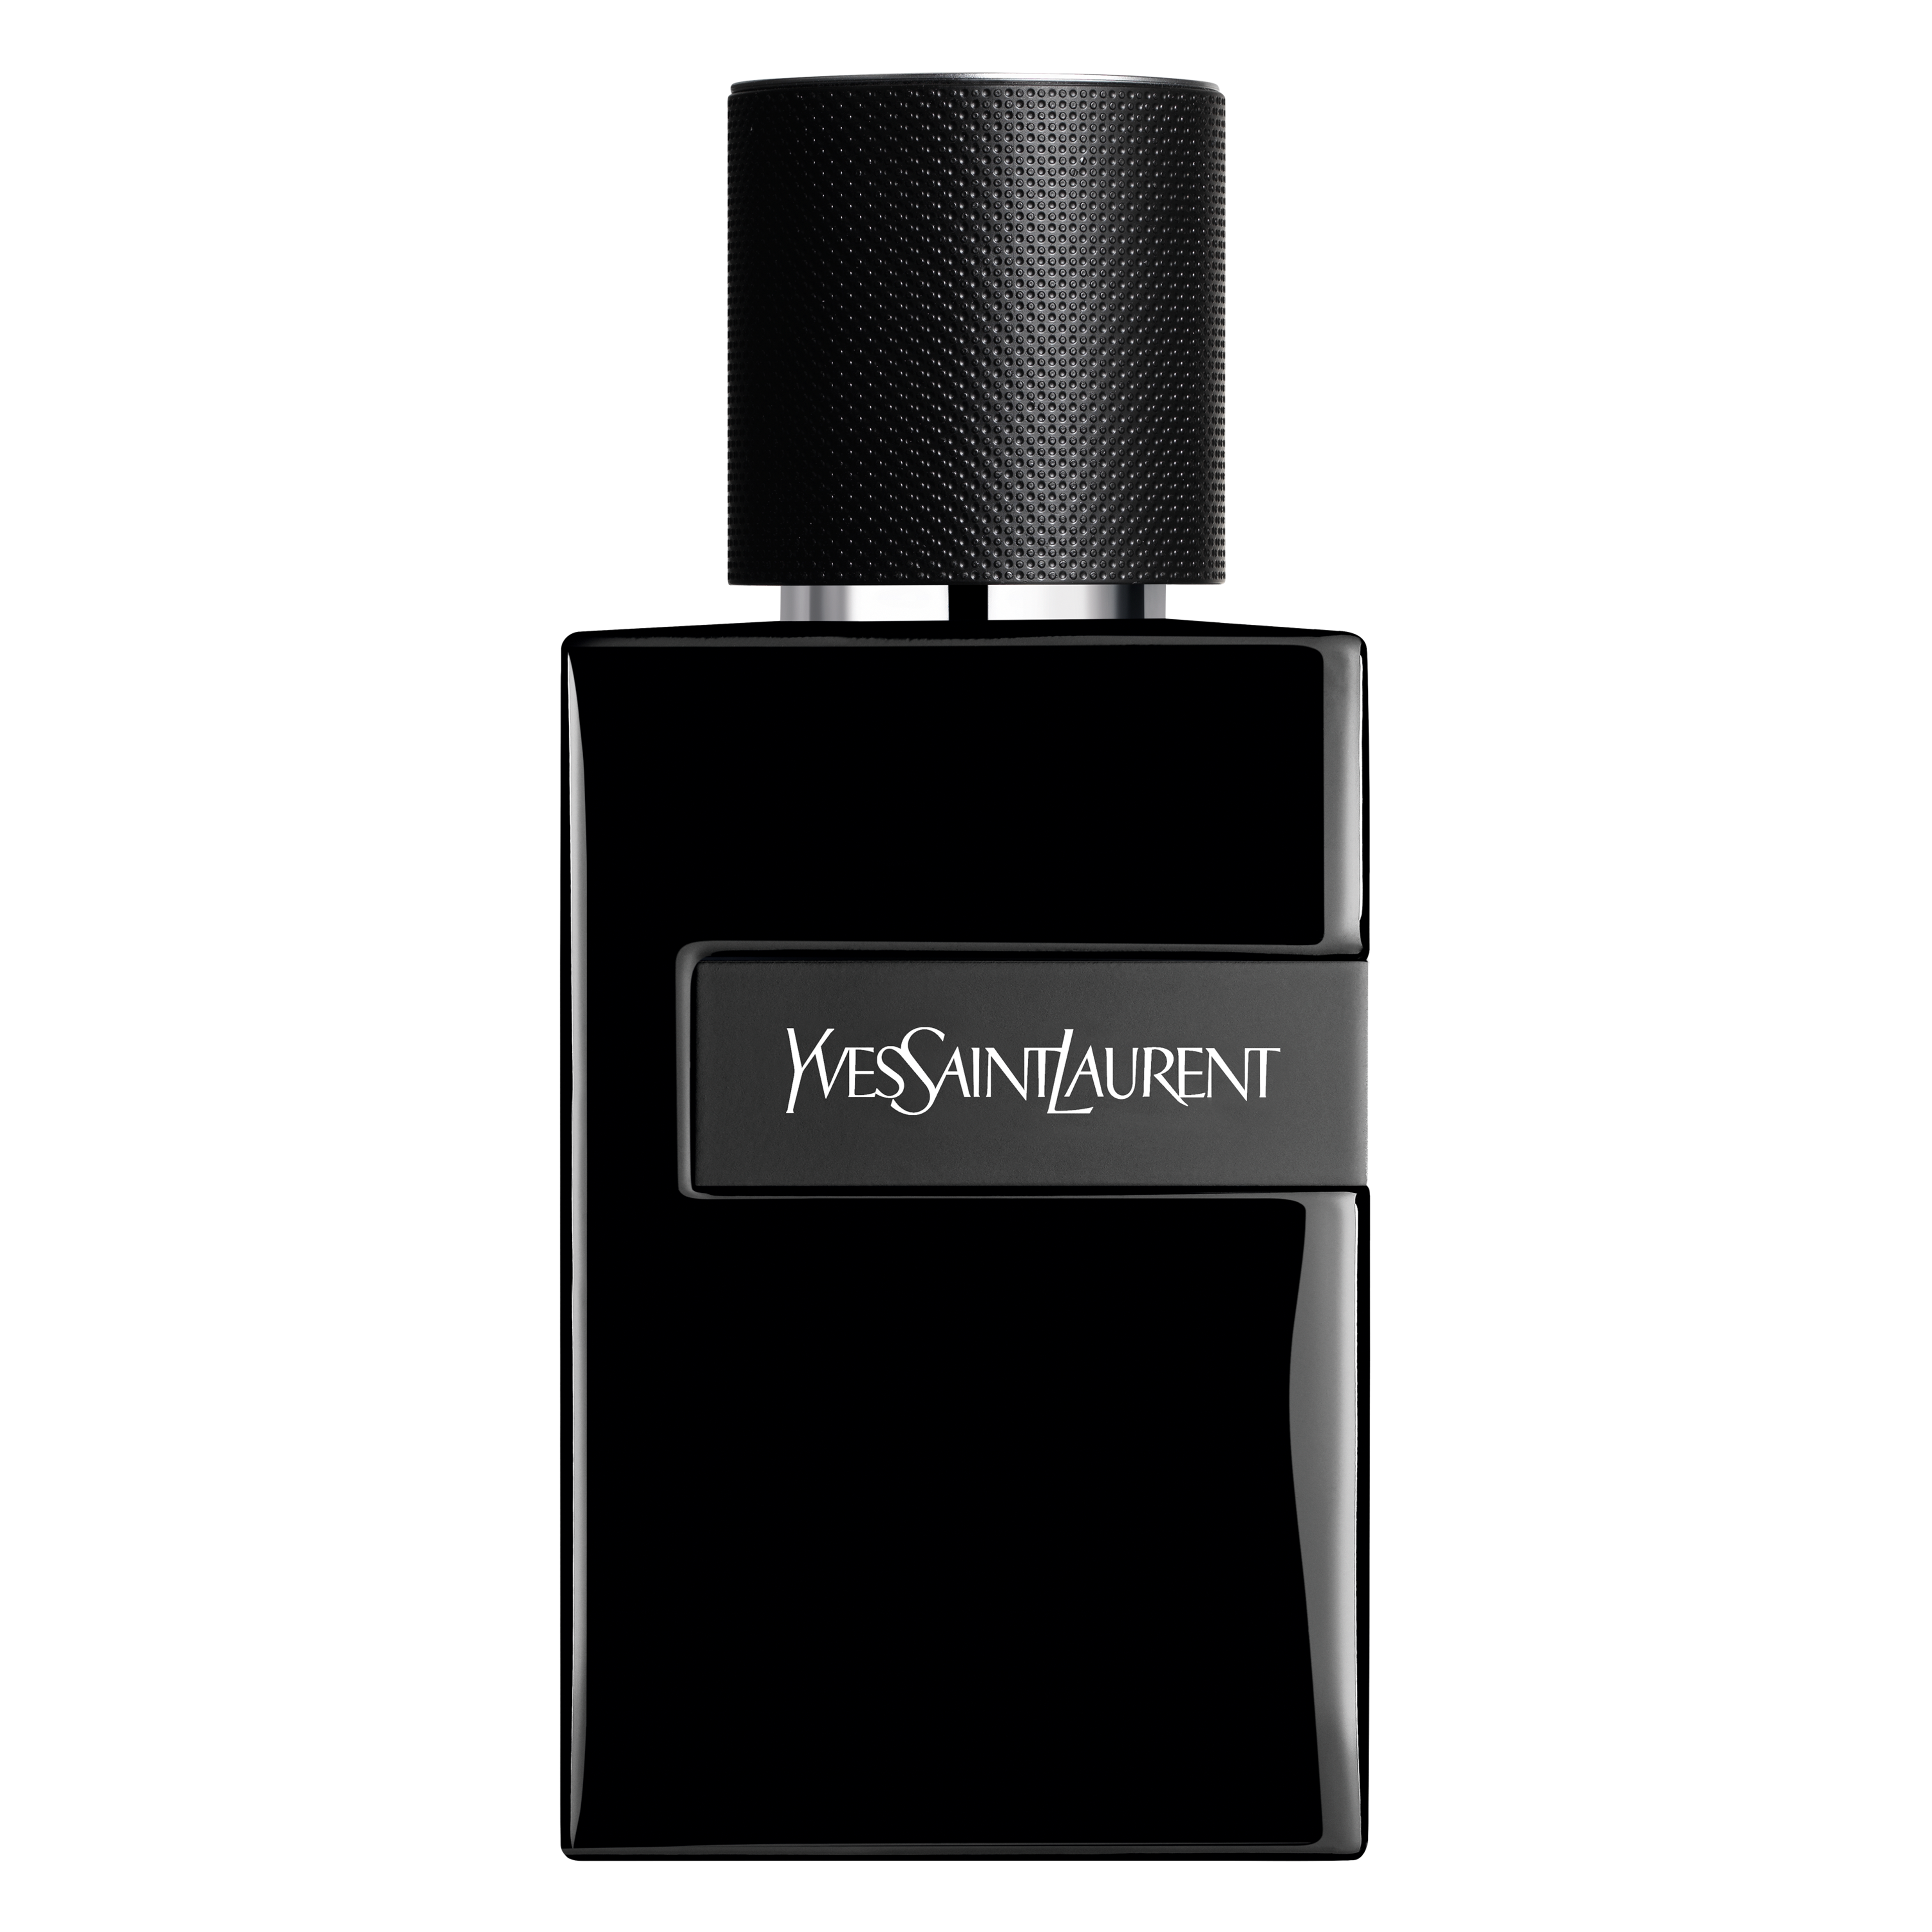 Yves Saint Laurent Y Le Parfum 1